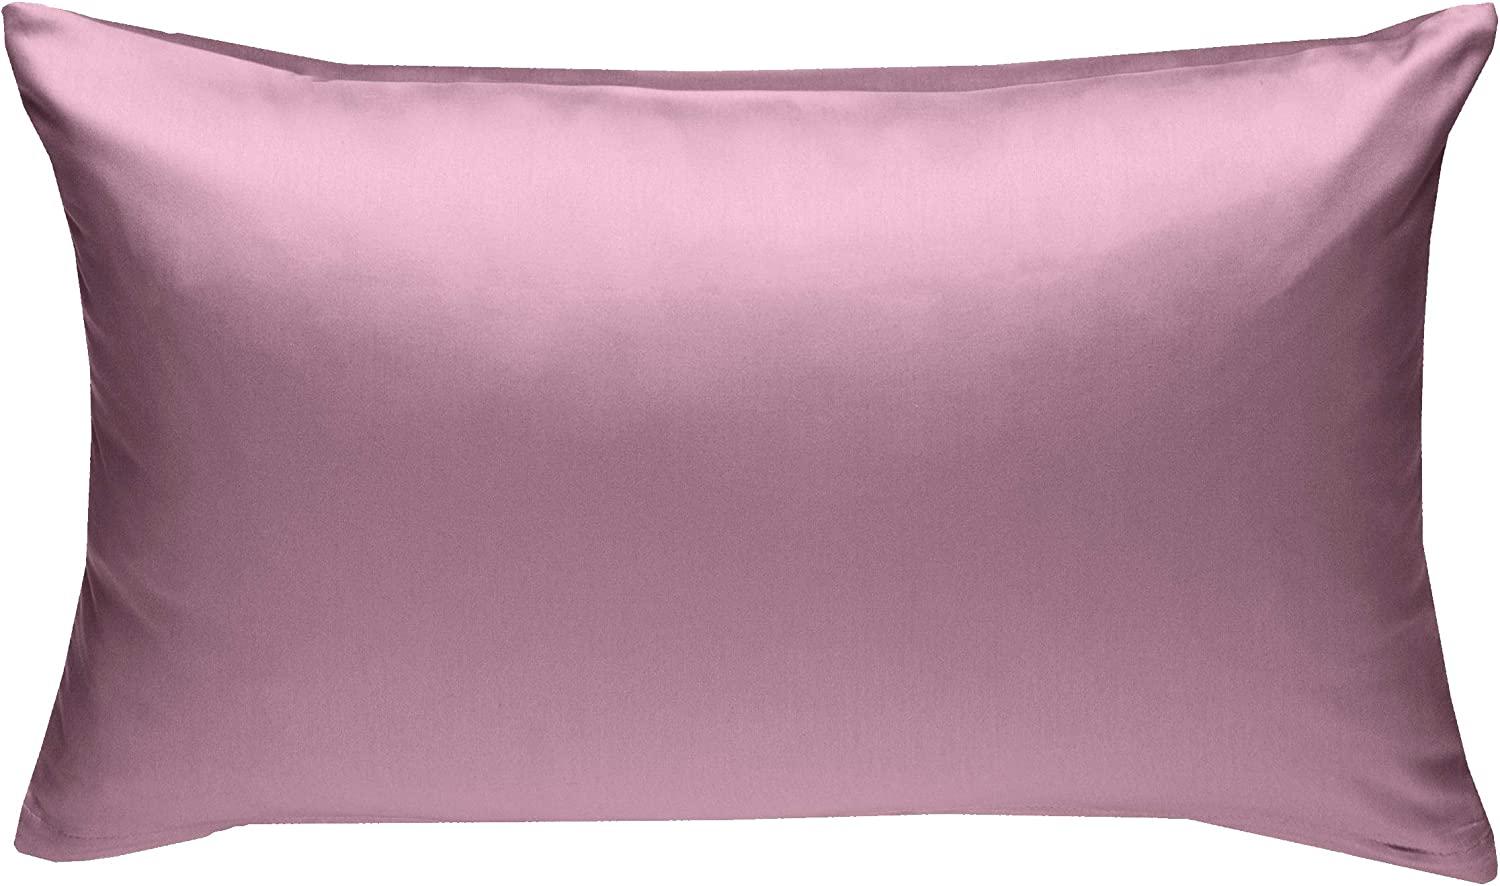 Bettwaesche-mit-Stil Mako-Satin / Baumwollsatin Bettwäsche uni / einfarbig rosa Kissenbezug 50x70 cm Bild 1